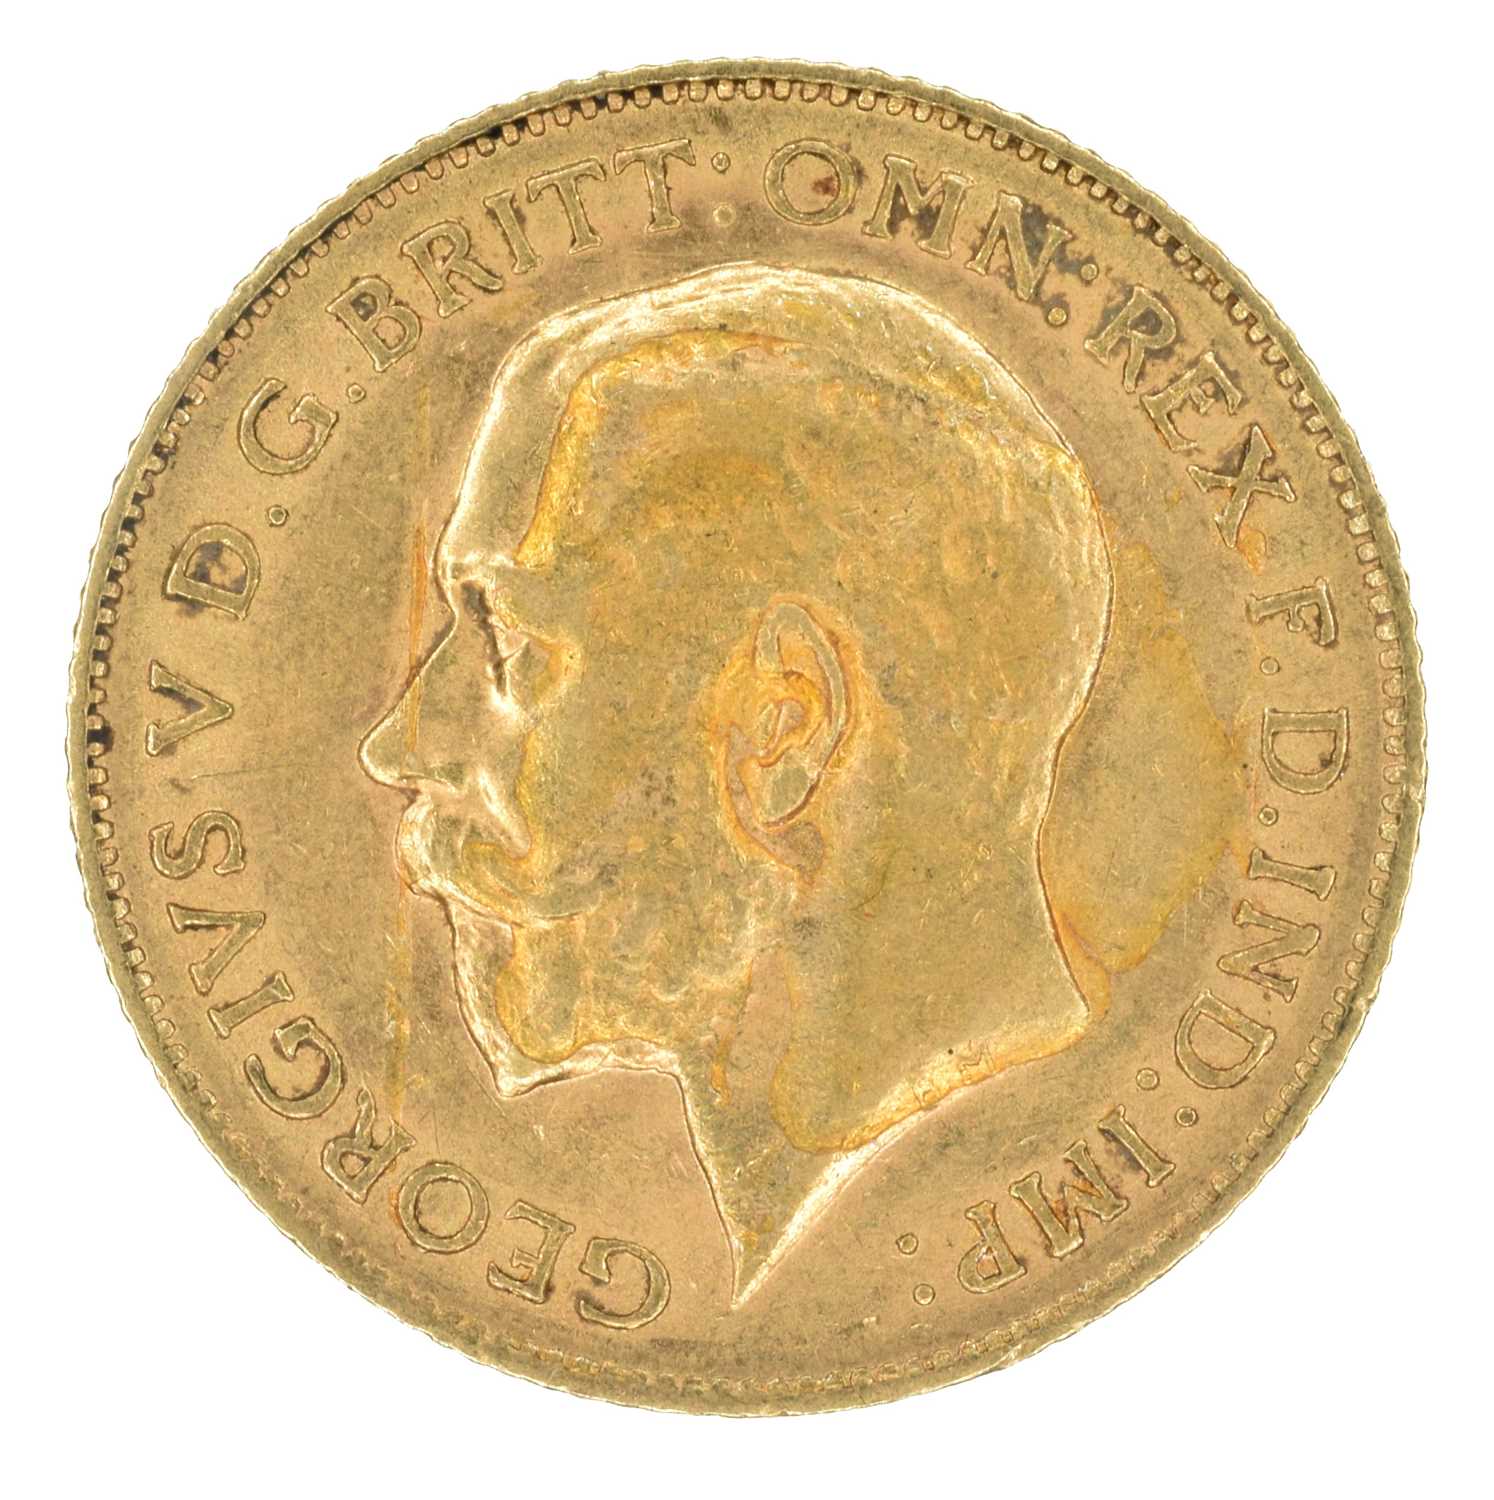 King George V, Half-Sovereign, 1911.